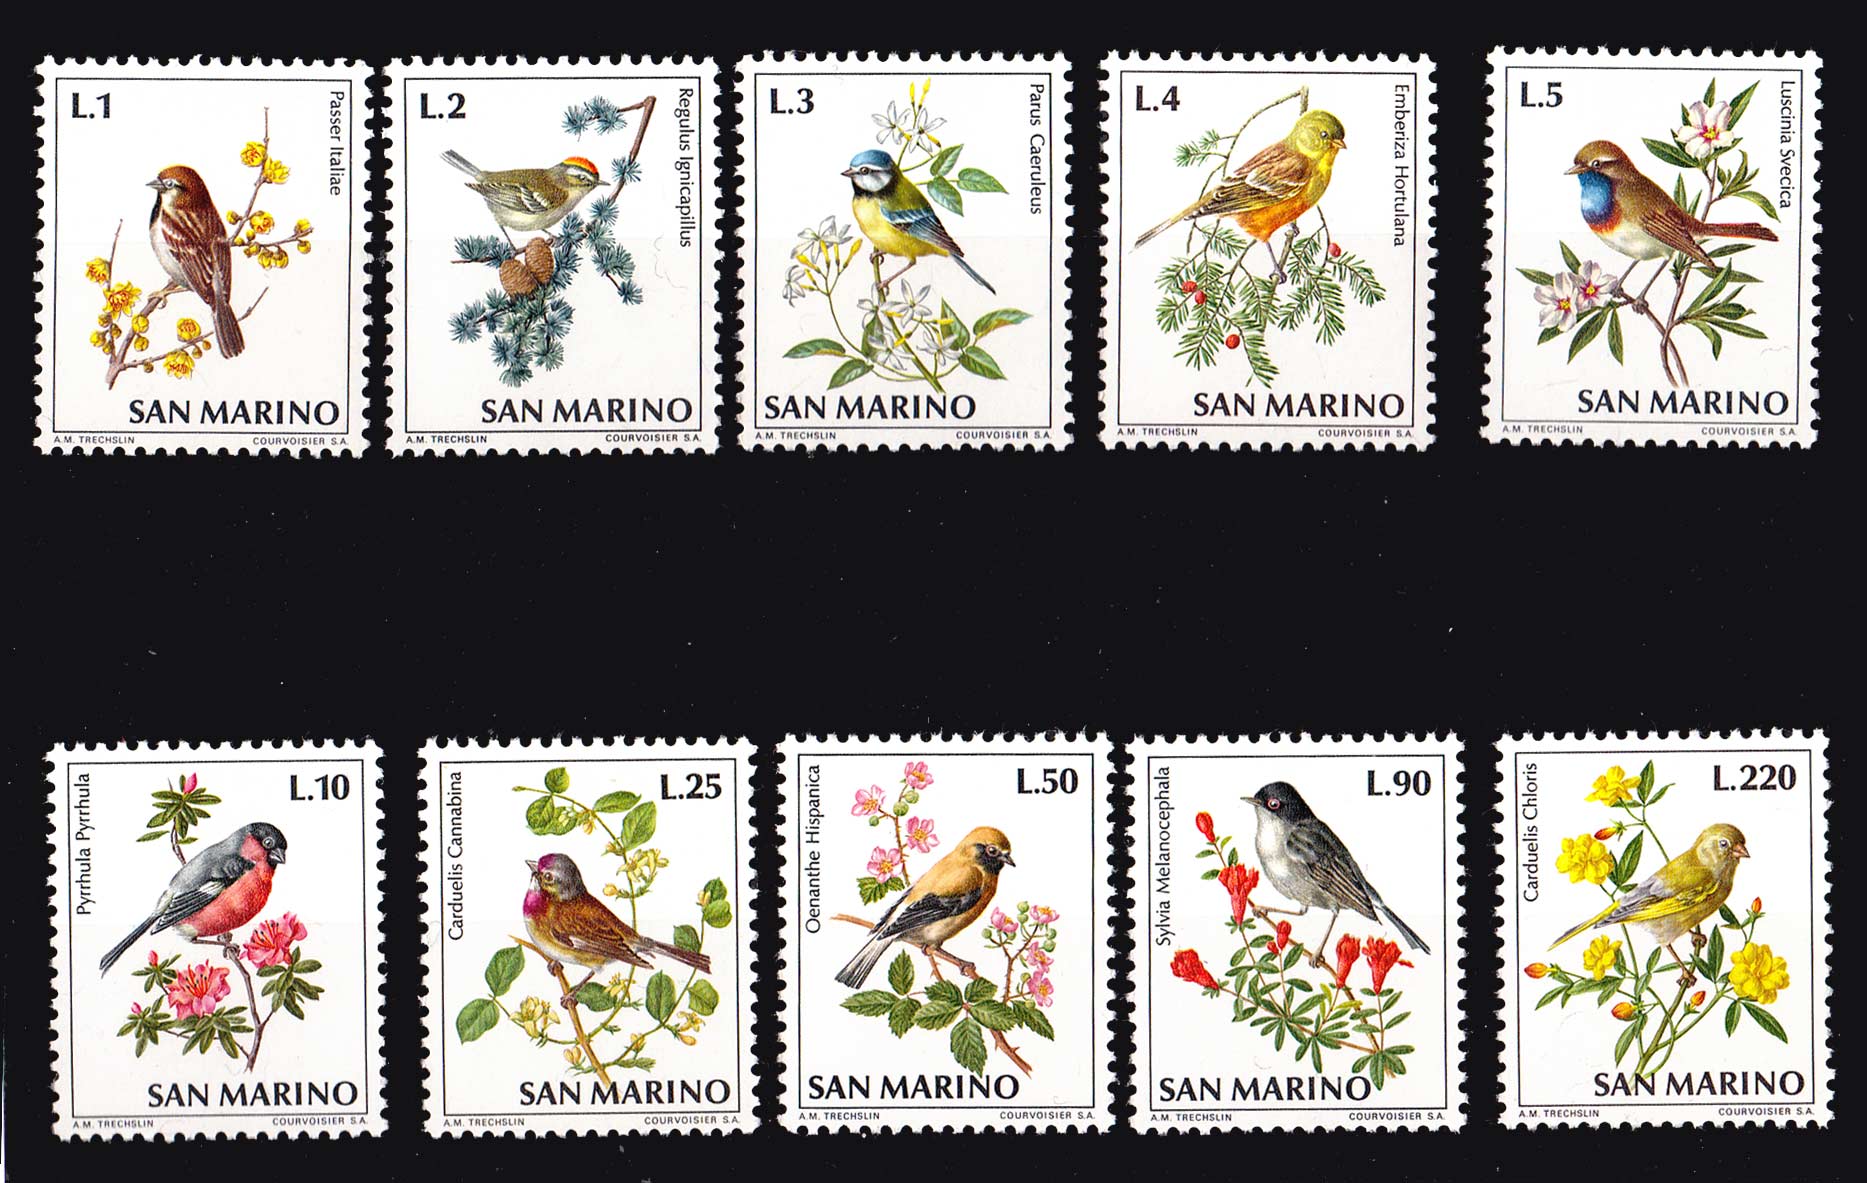 1972 San Marino Fauna Avicola 10 Val. tematica uccelli nuovi